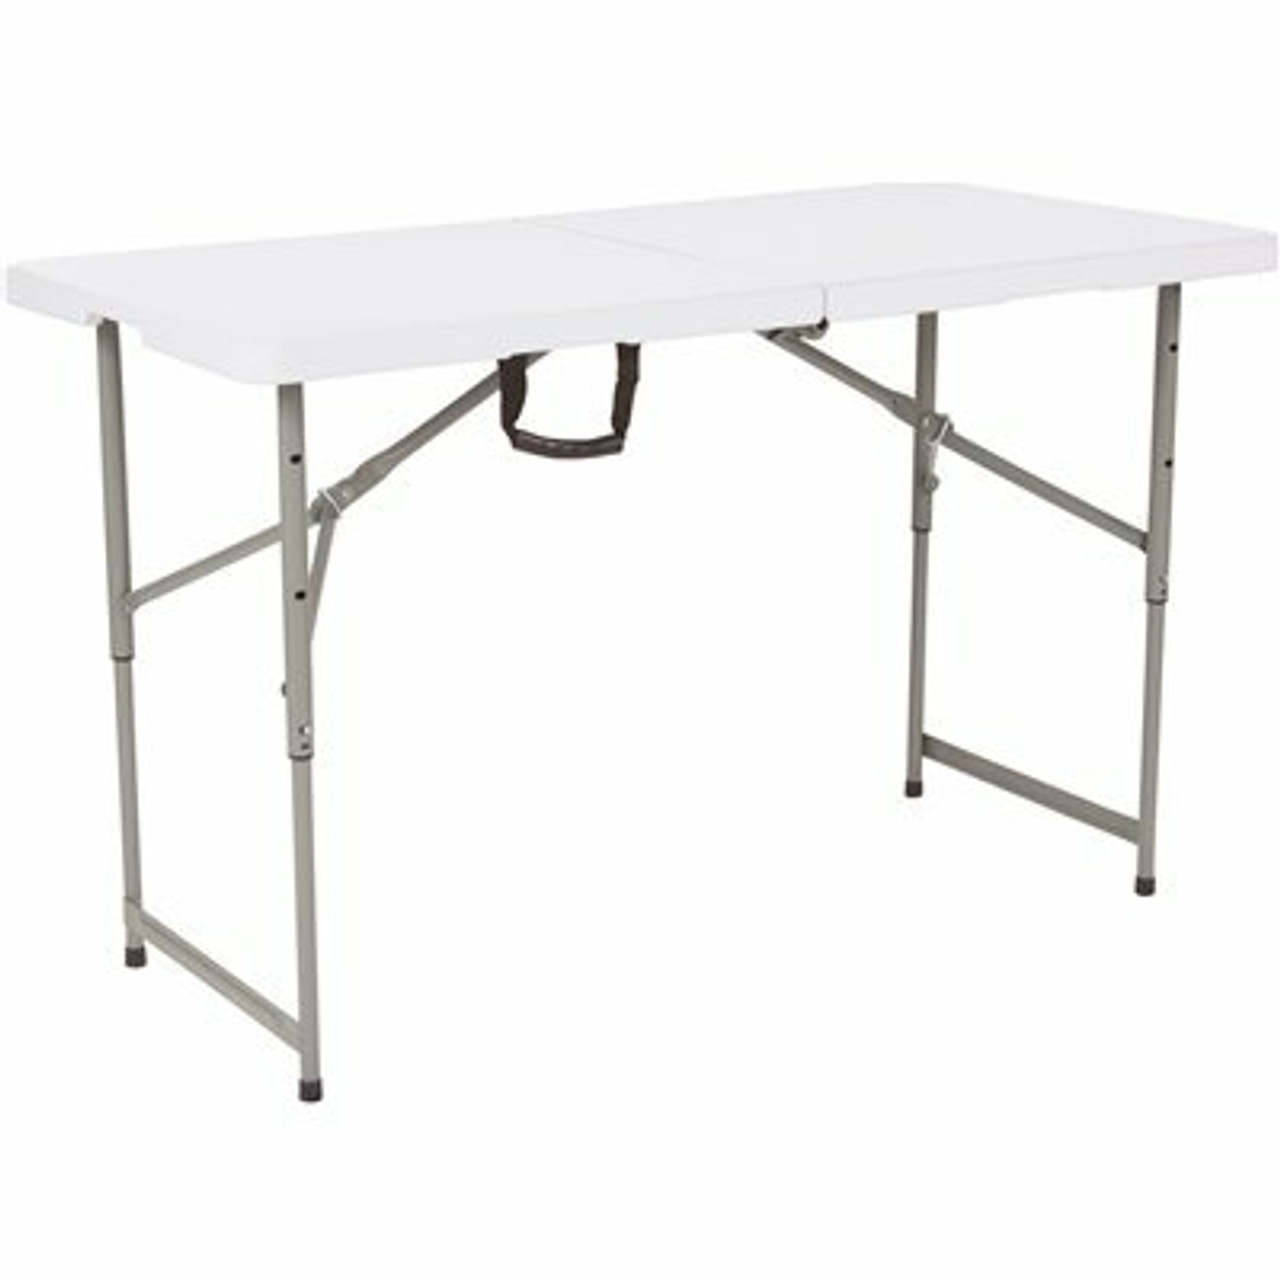 48 In. Granite White Plastic Tabletop Metal Frame Folding Table - 308685850